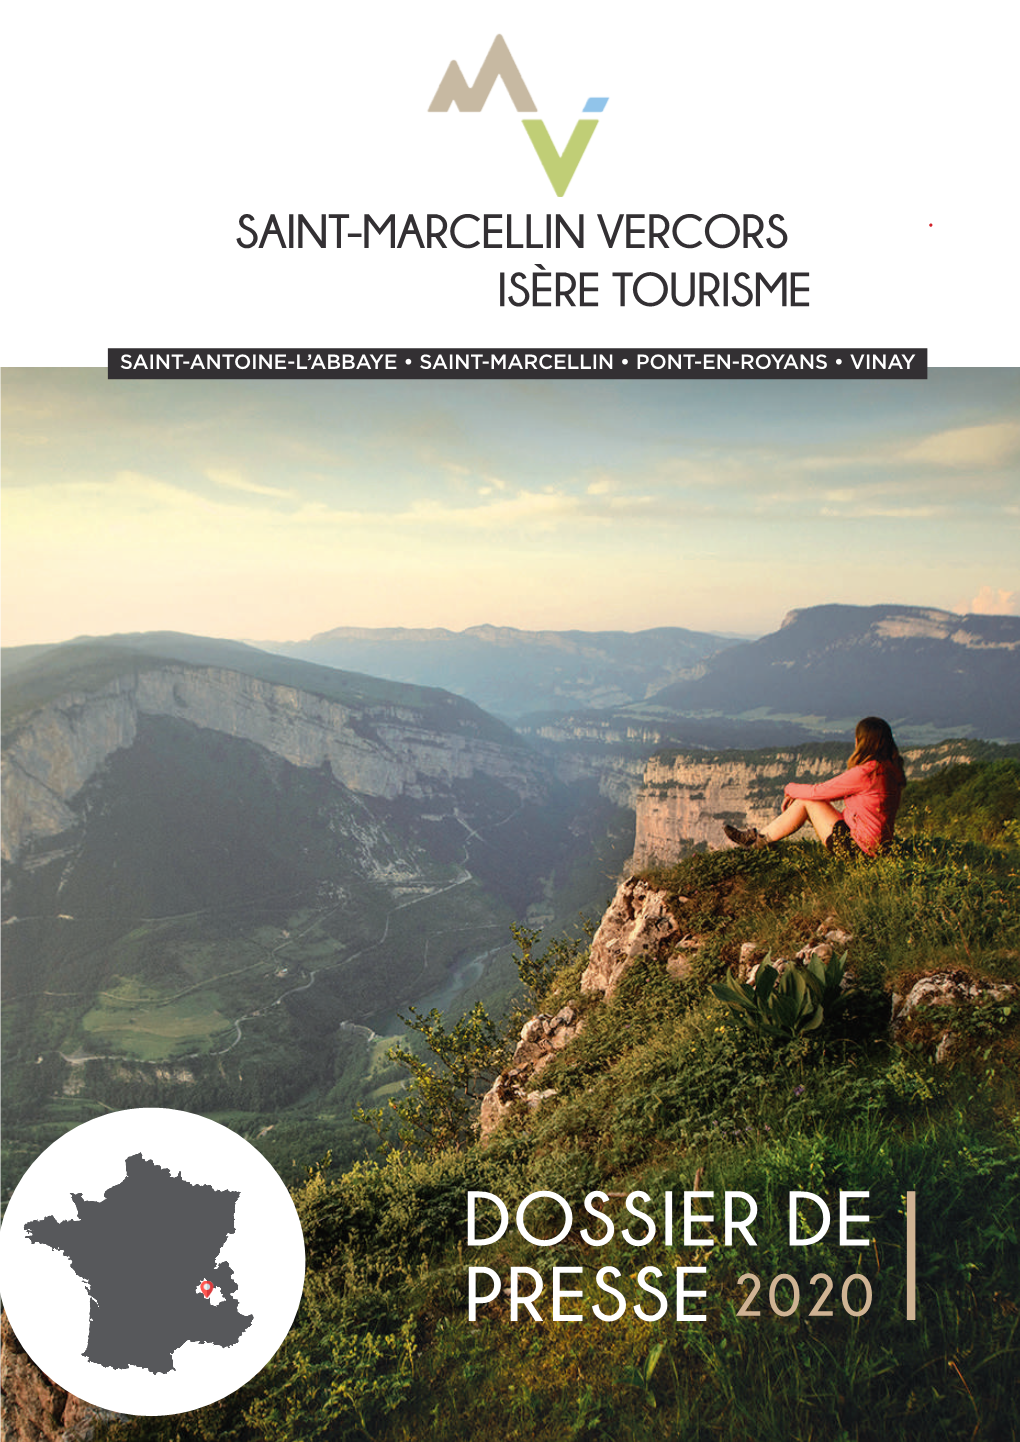 Saint-Marcellin Vercors Isère Tourisme